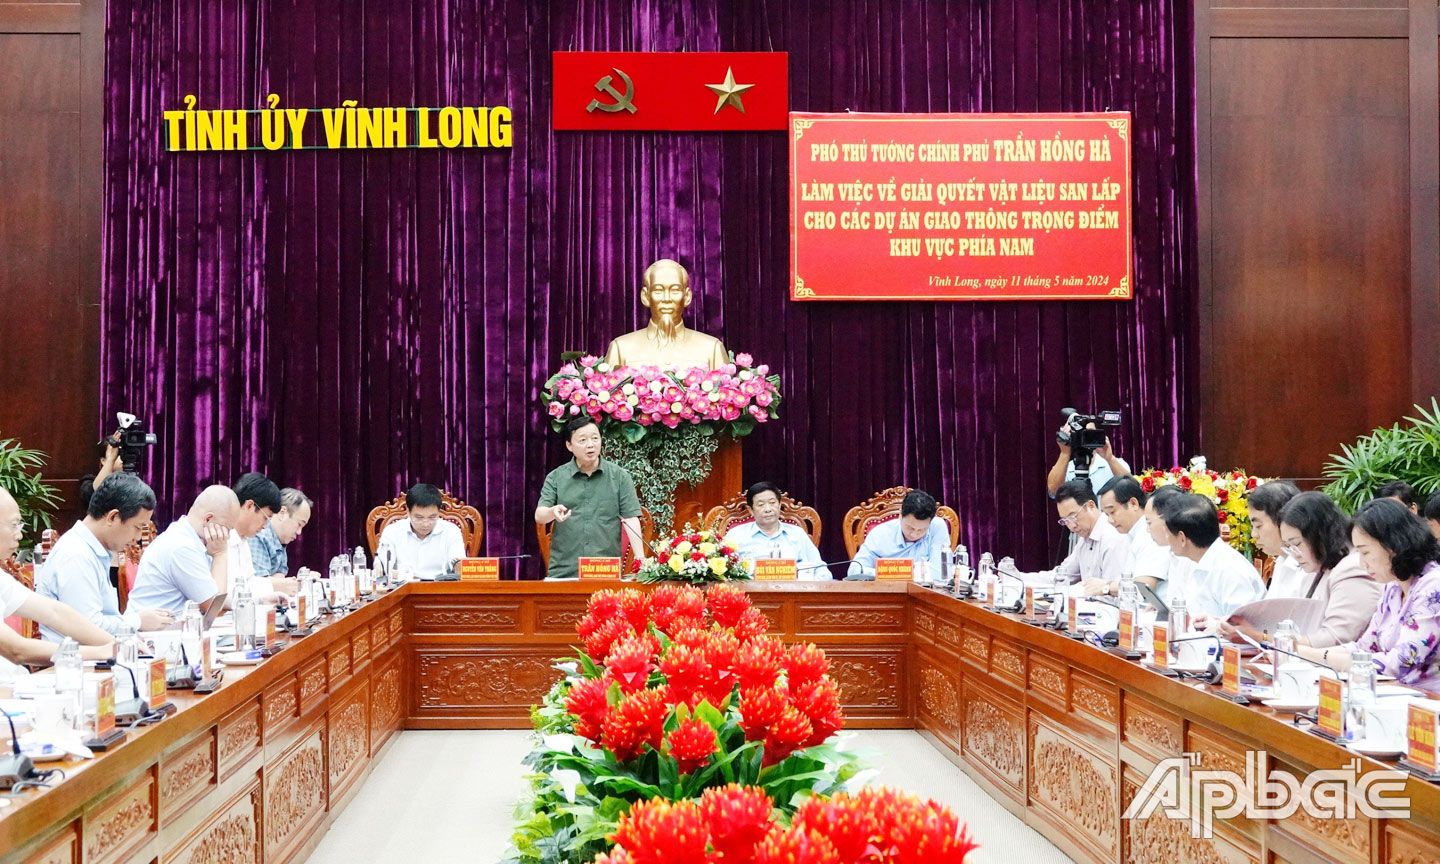 Phó Thủ tướng Trần Hồng Hà phát biểu tại buổi làm việc với các tỉnh, thành ĐBSCL về giải quyết vật liệu san lấp cho các dự án giao thông trọng điểm khu vực phía Nam.